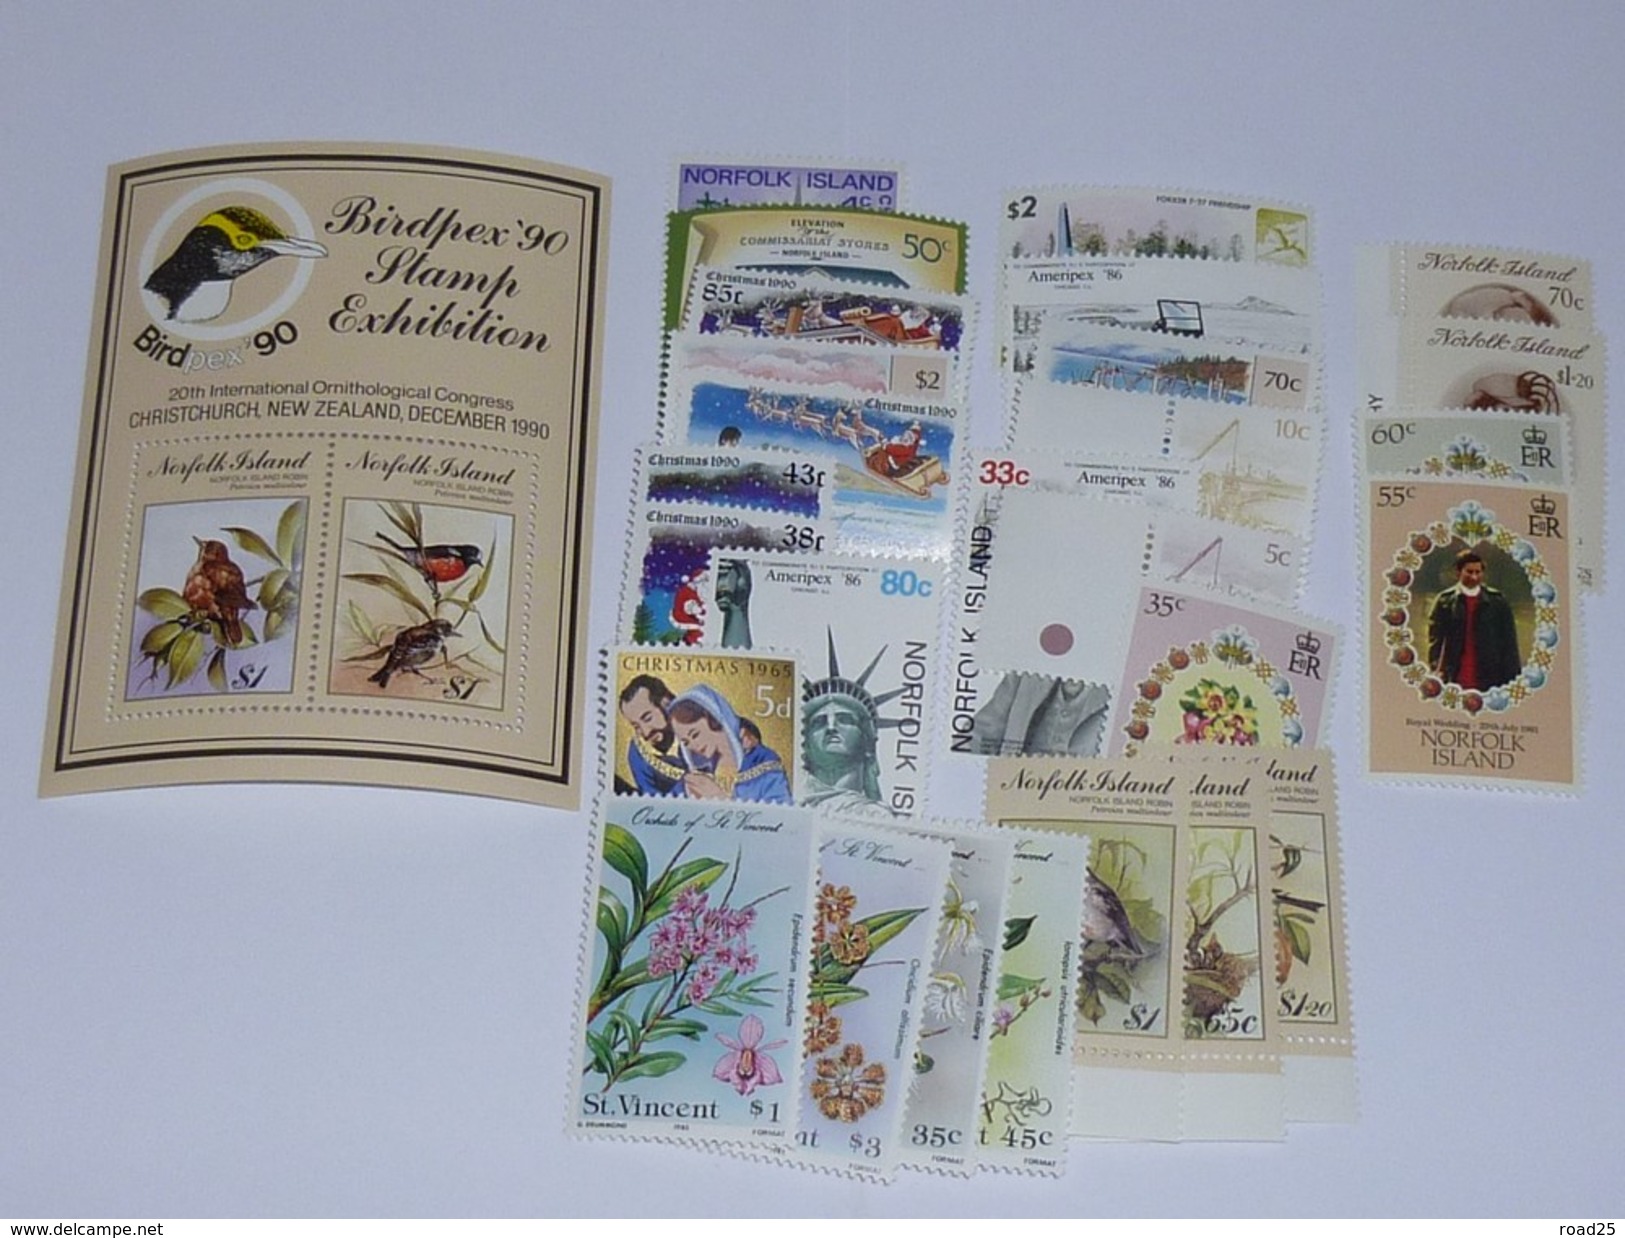 Océanie : stock de timbres neuf sans charnière sous pochettes, tout pays et territoires